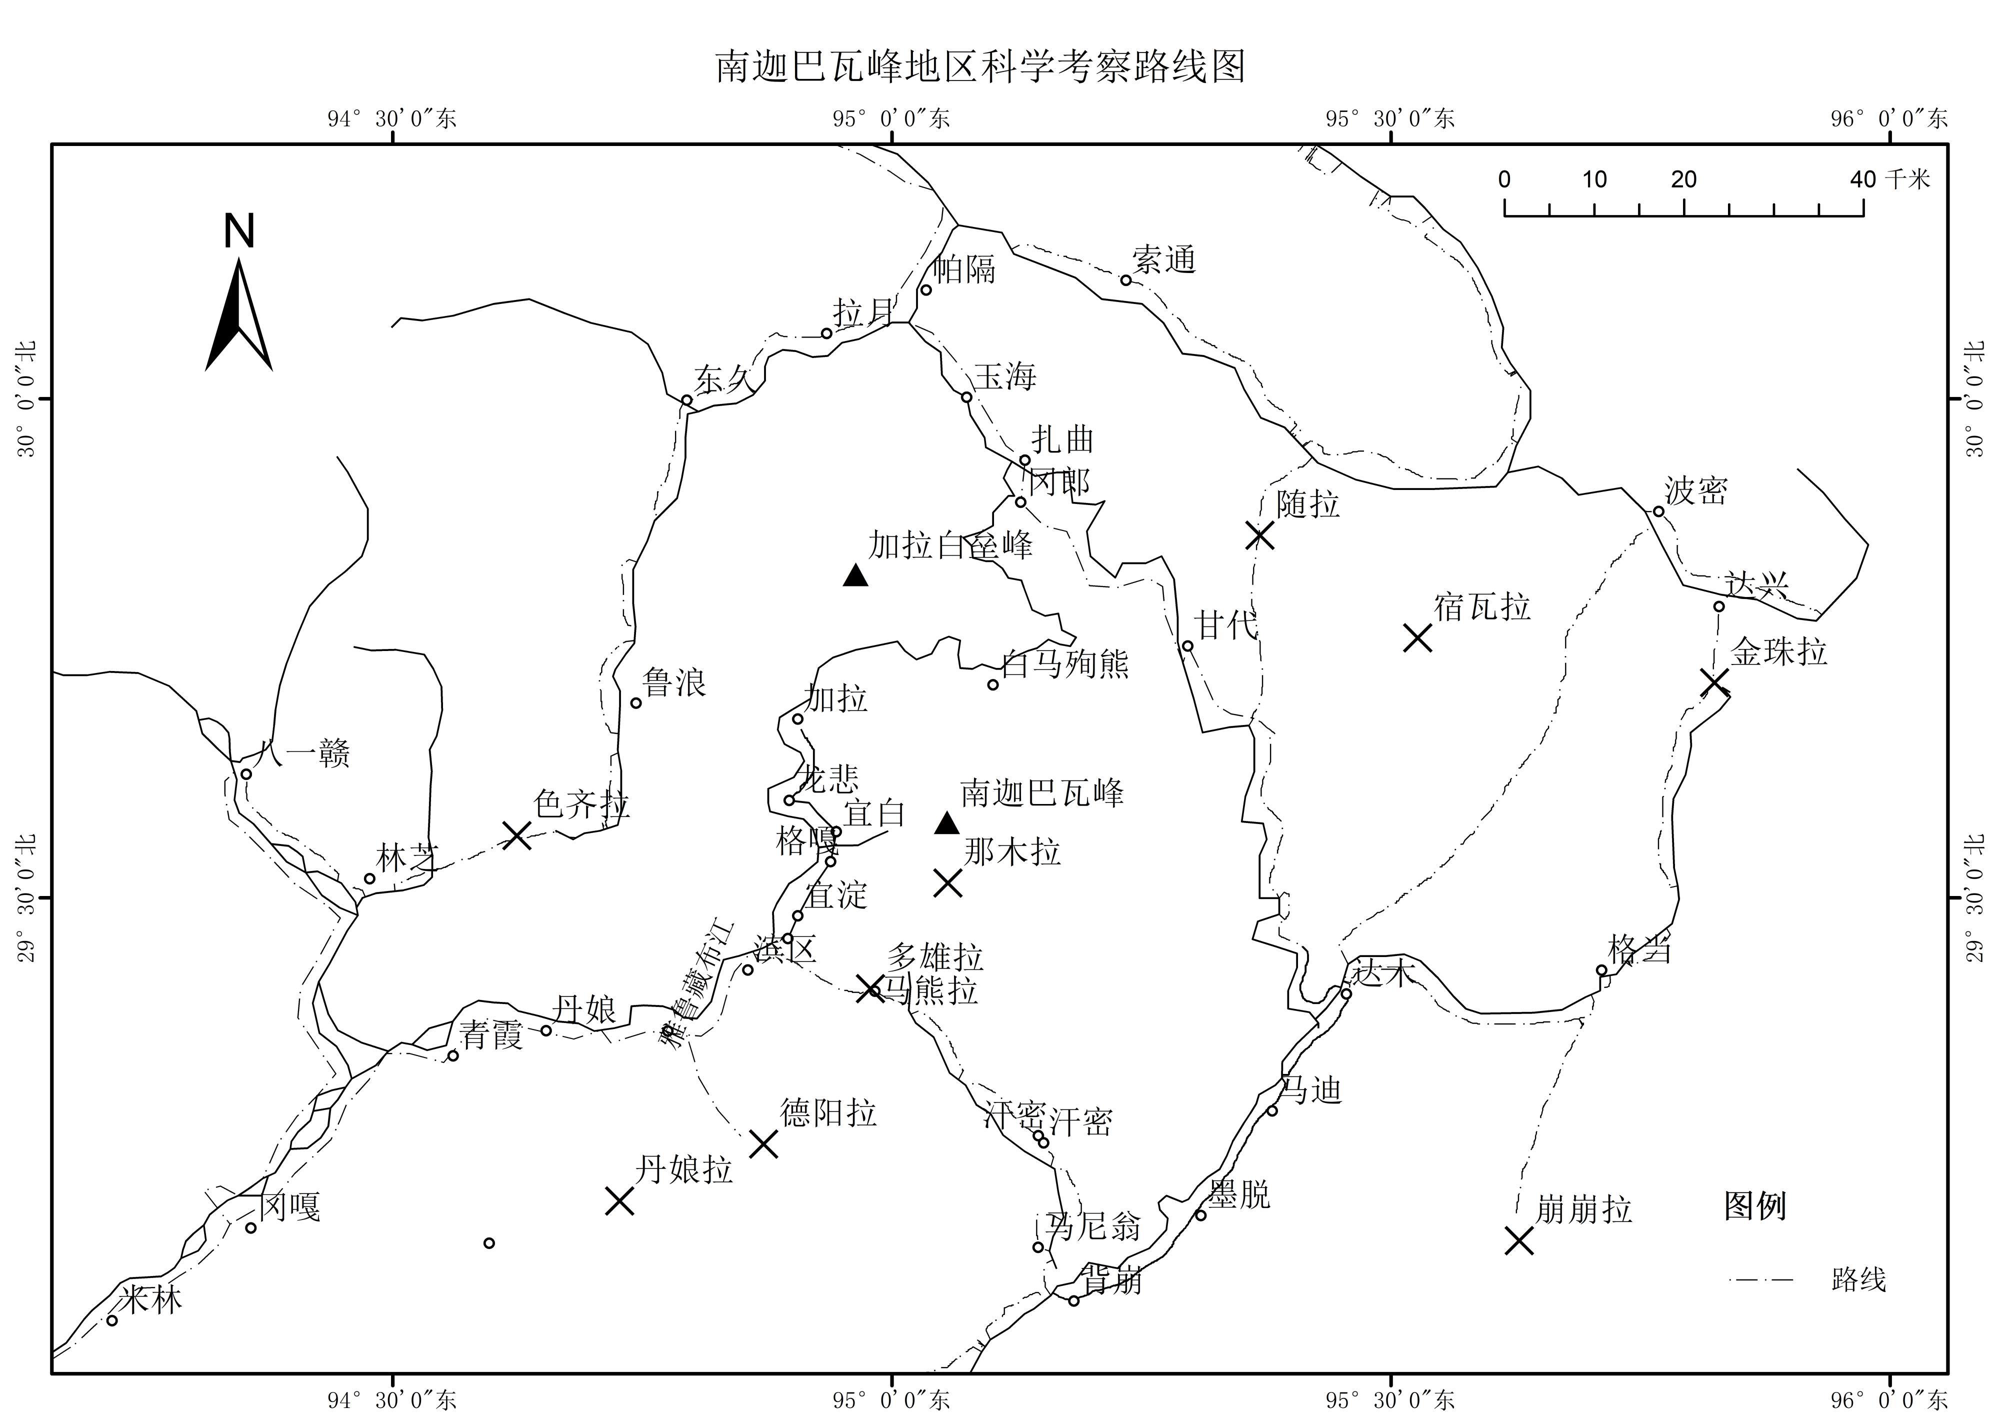 南迦巴瓦峰地区土地类型特征数据集（1982-1984）